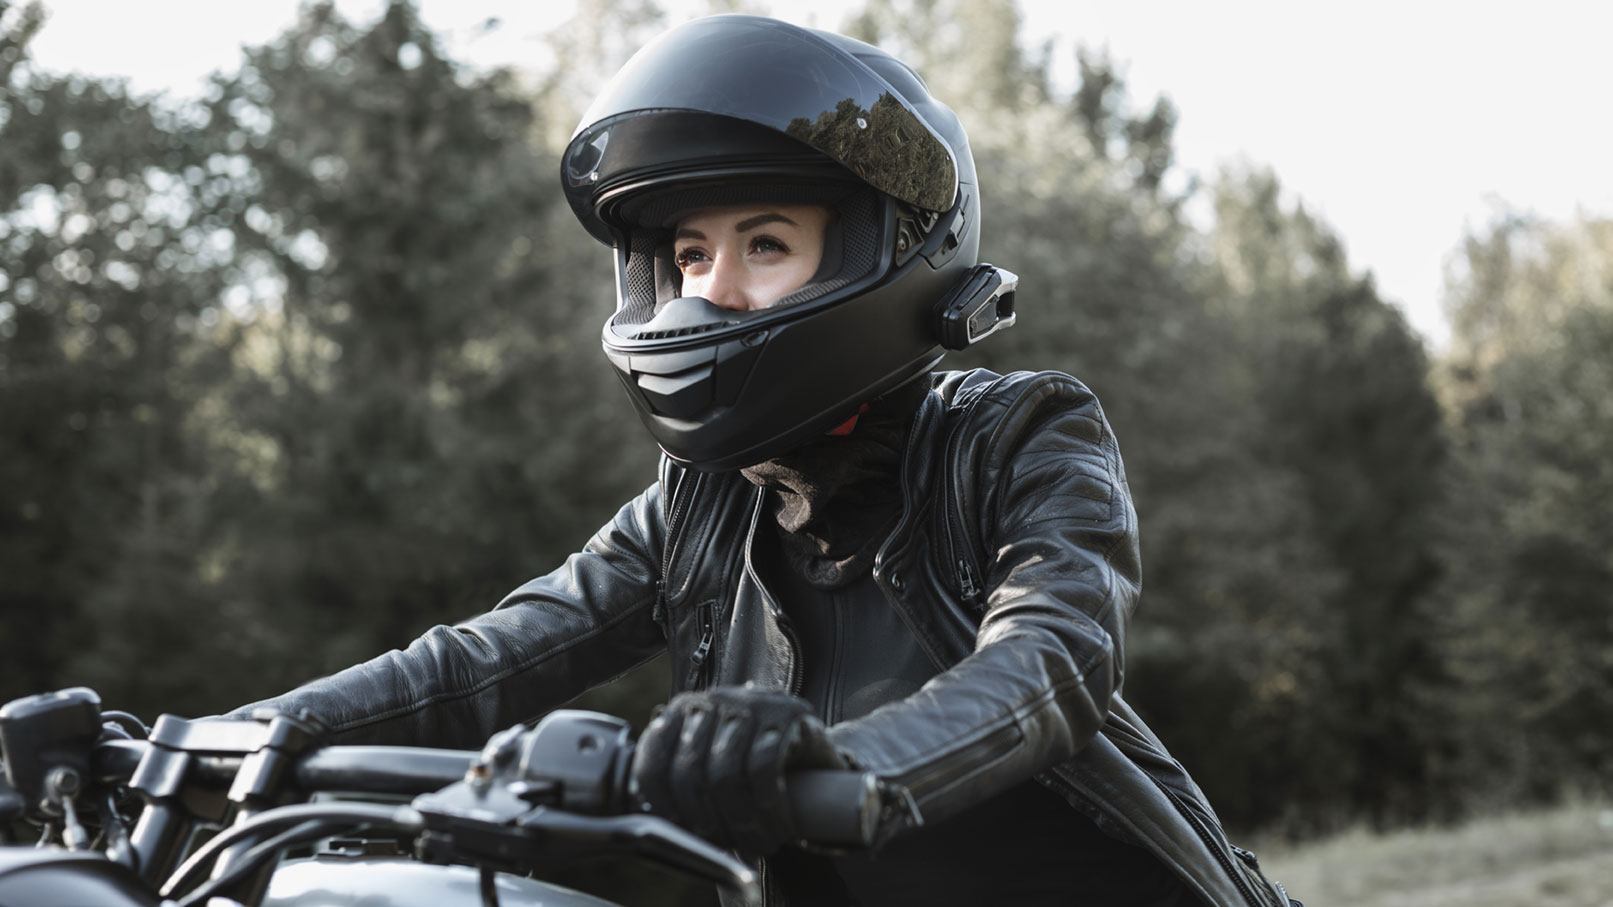 Eine Motorradfahrerin mit entsprechender Ausrüstung.